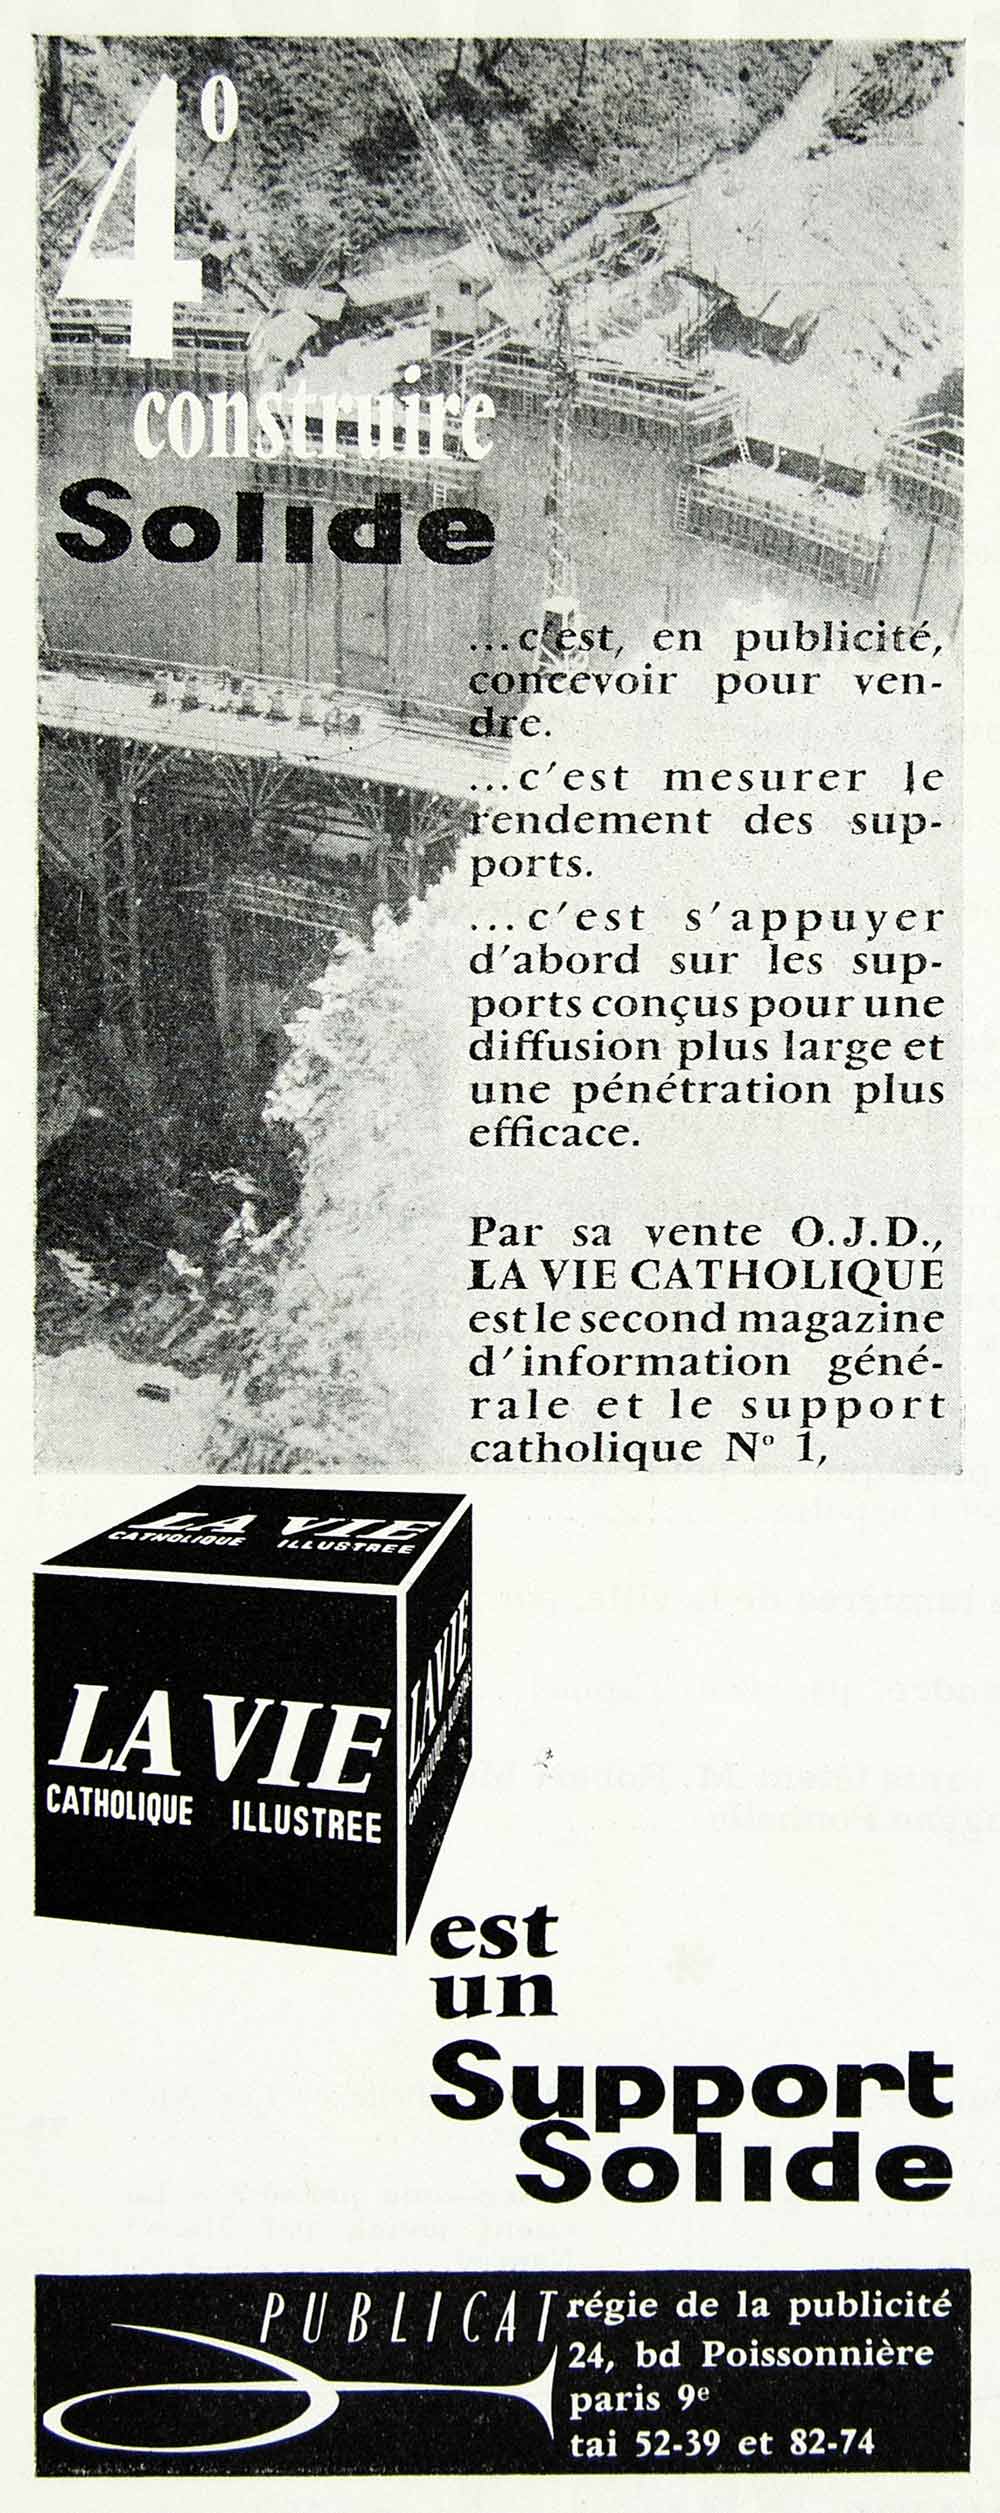 1957 Ad La Vie Catholique Illustree Publicat OJD Dam Religious French VEN1